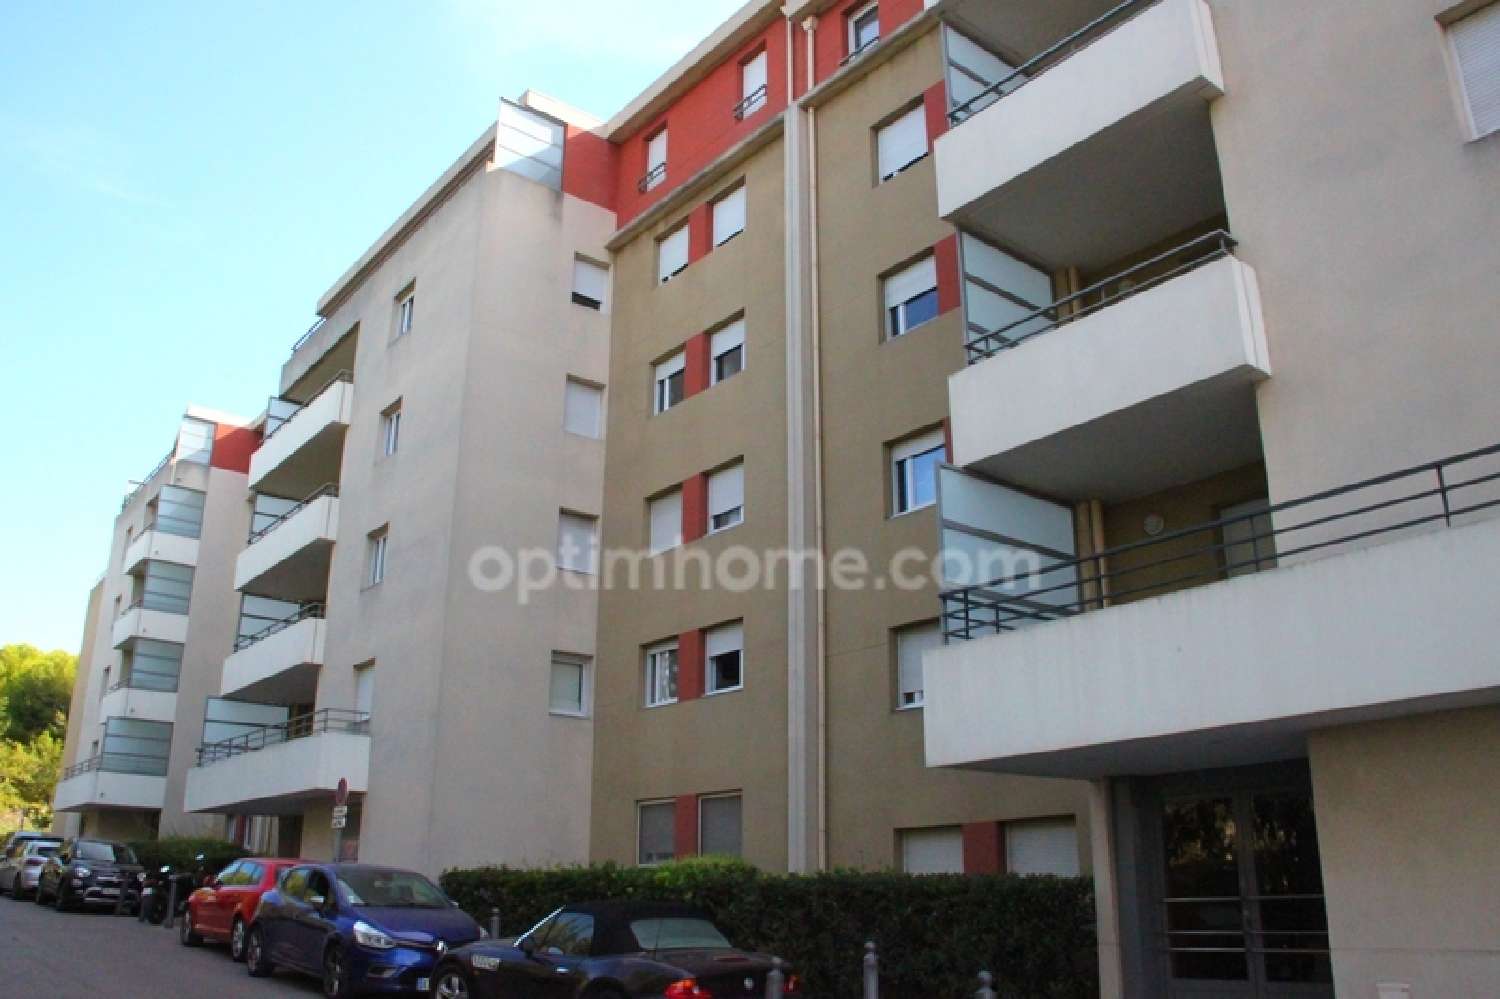  for sale apartment Marseille 14e Arrondissement Bouches-du-Rhône 2